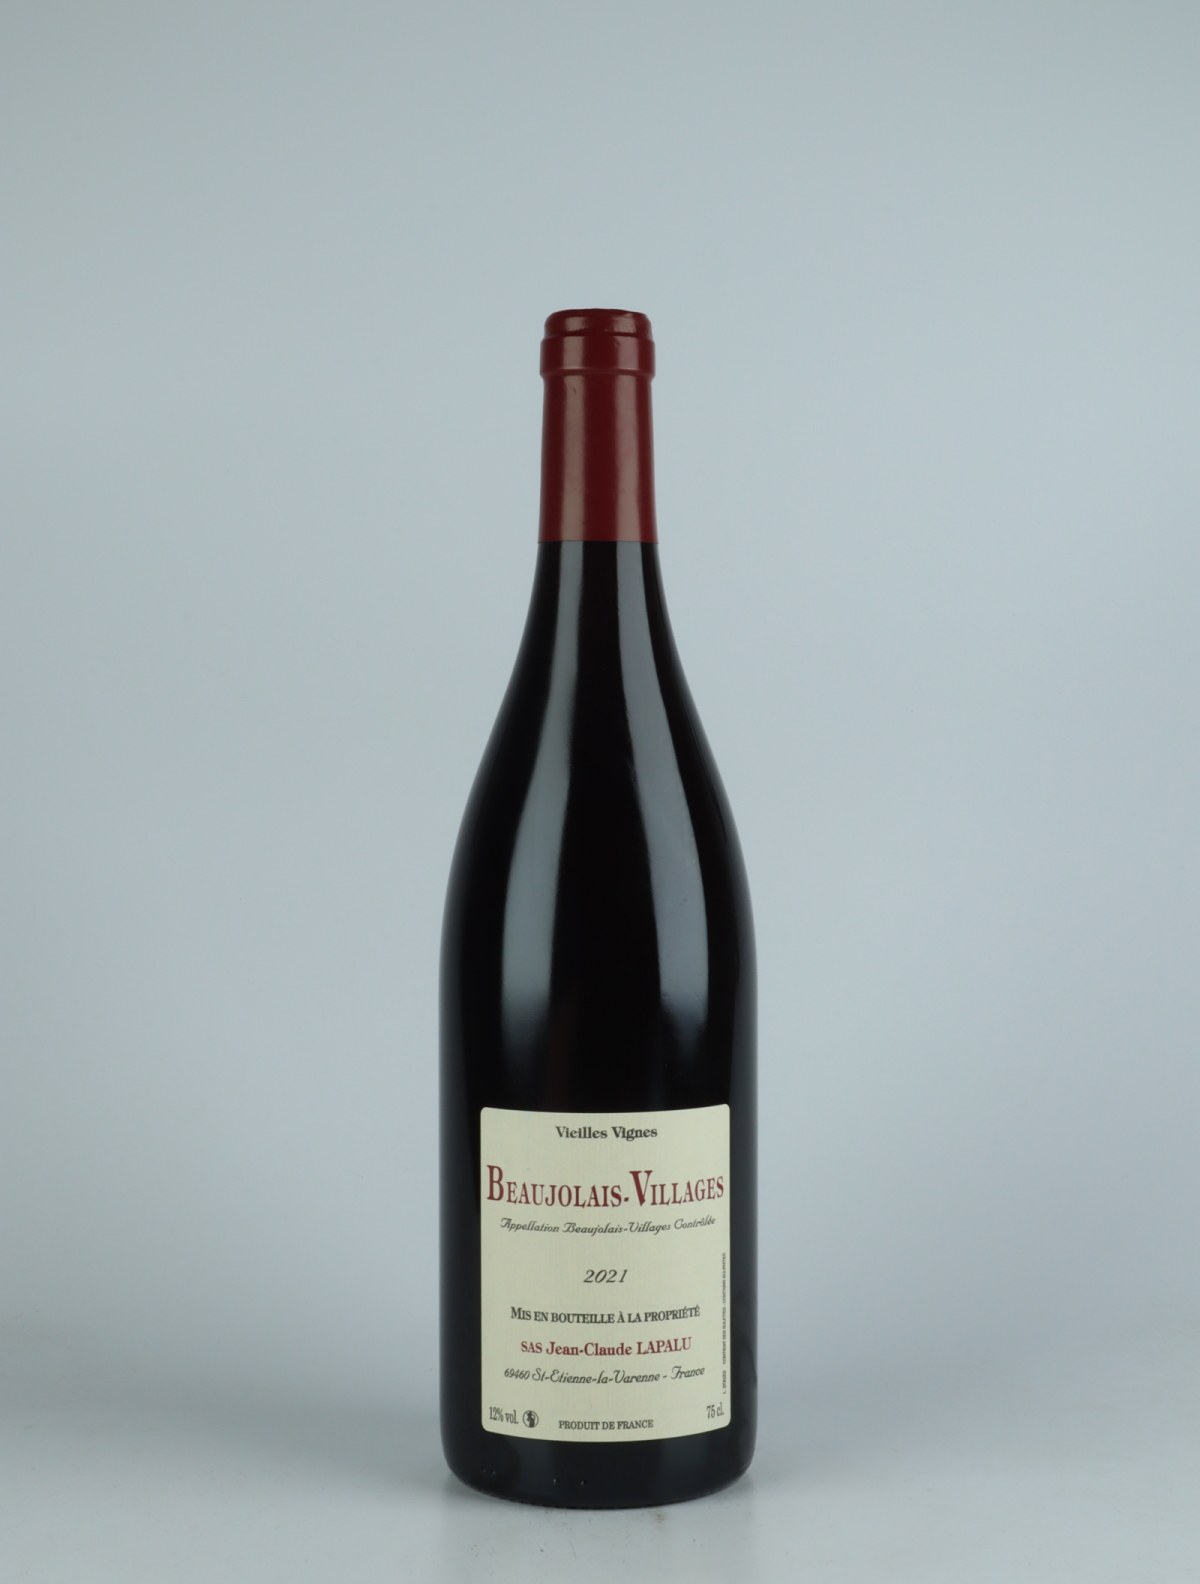 En flaske 2021 Beaujolais Villages - Vieilles Vignes Rødvin fra Jean-Claude Lapalu, Beaujolais i Frankrig